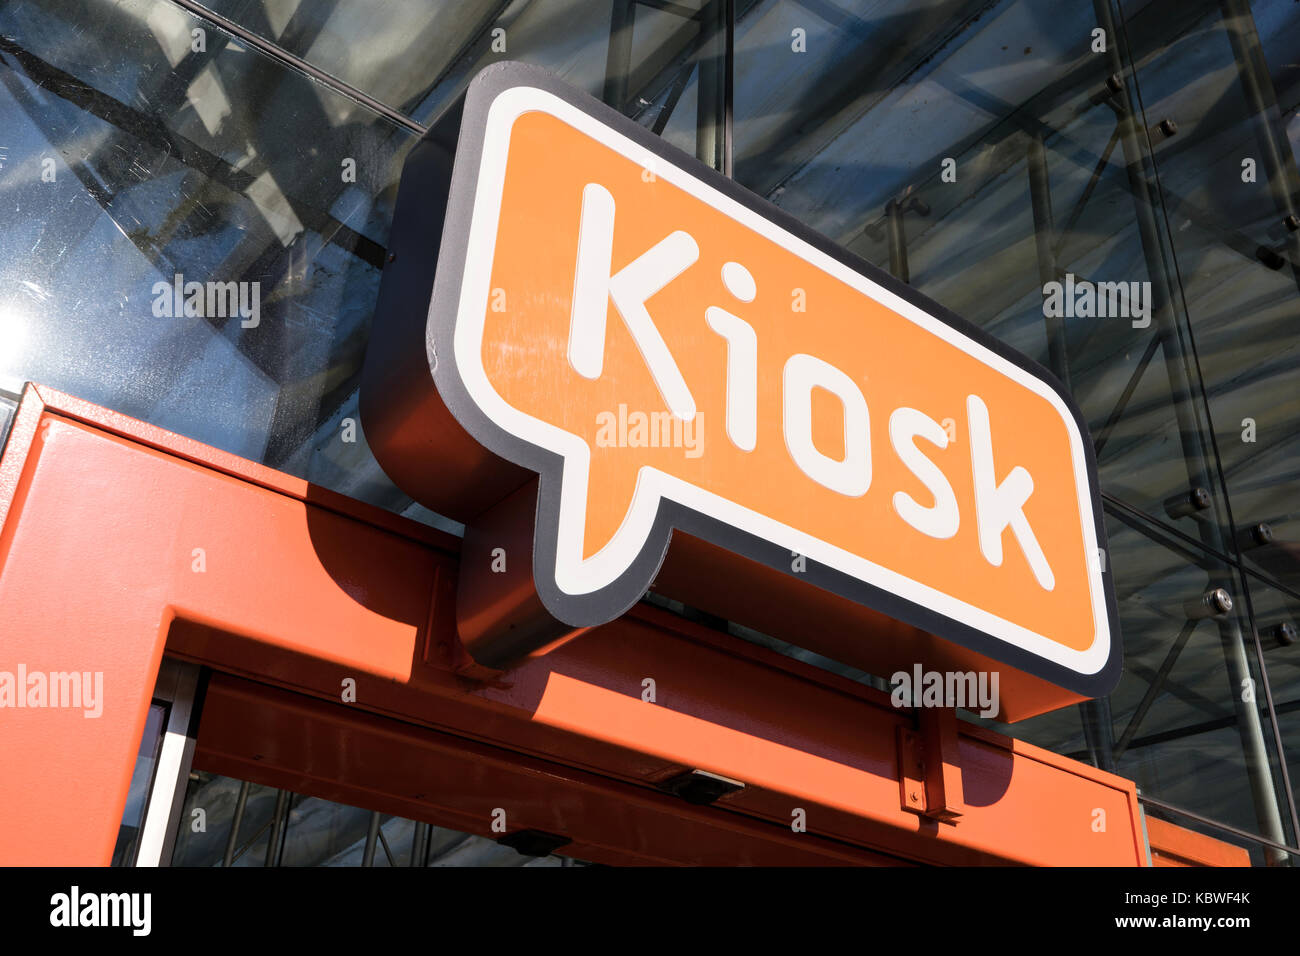 Segno kiosk in filiali. kiosk è un concetto con un assortimento completo di prodotti alimentari e delle bevande e qualcosa da fare per il viaggio in olandese stazioni ferroviarie Foto Stock